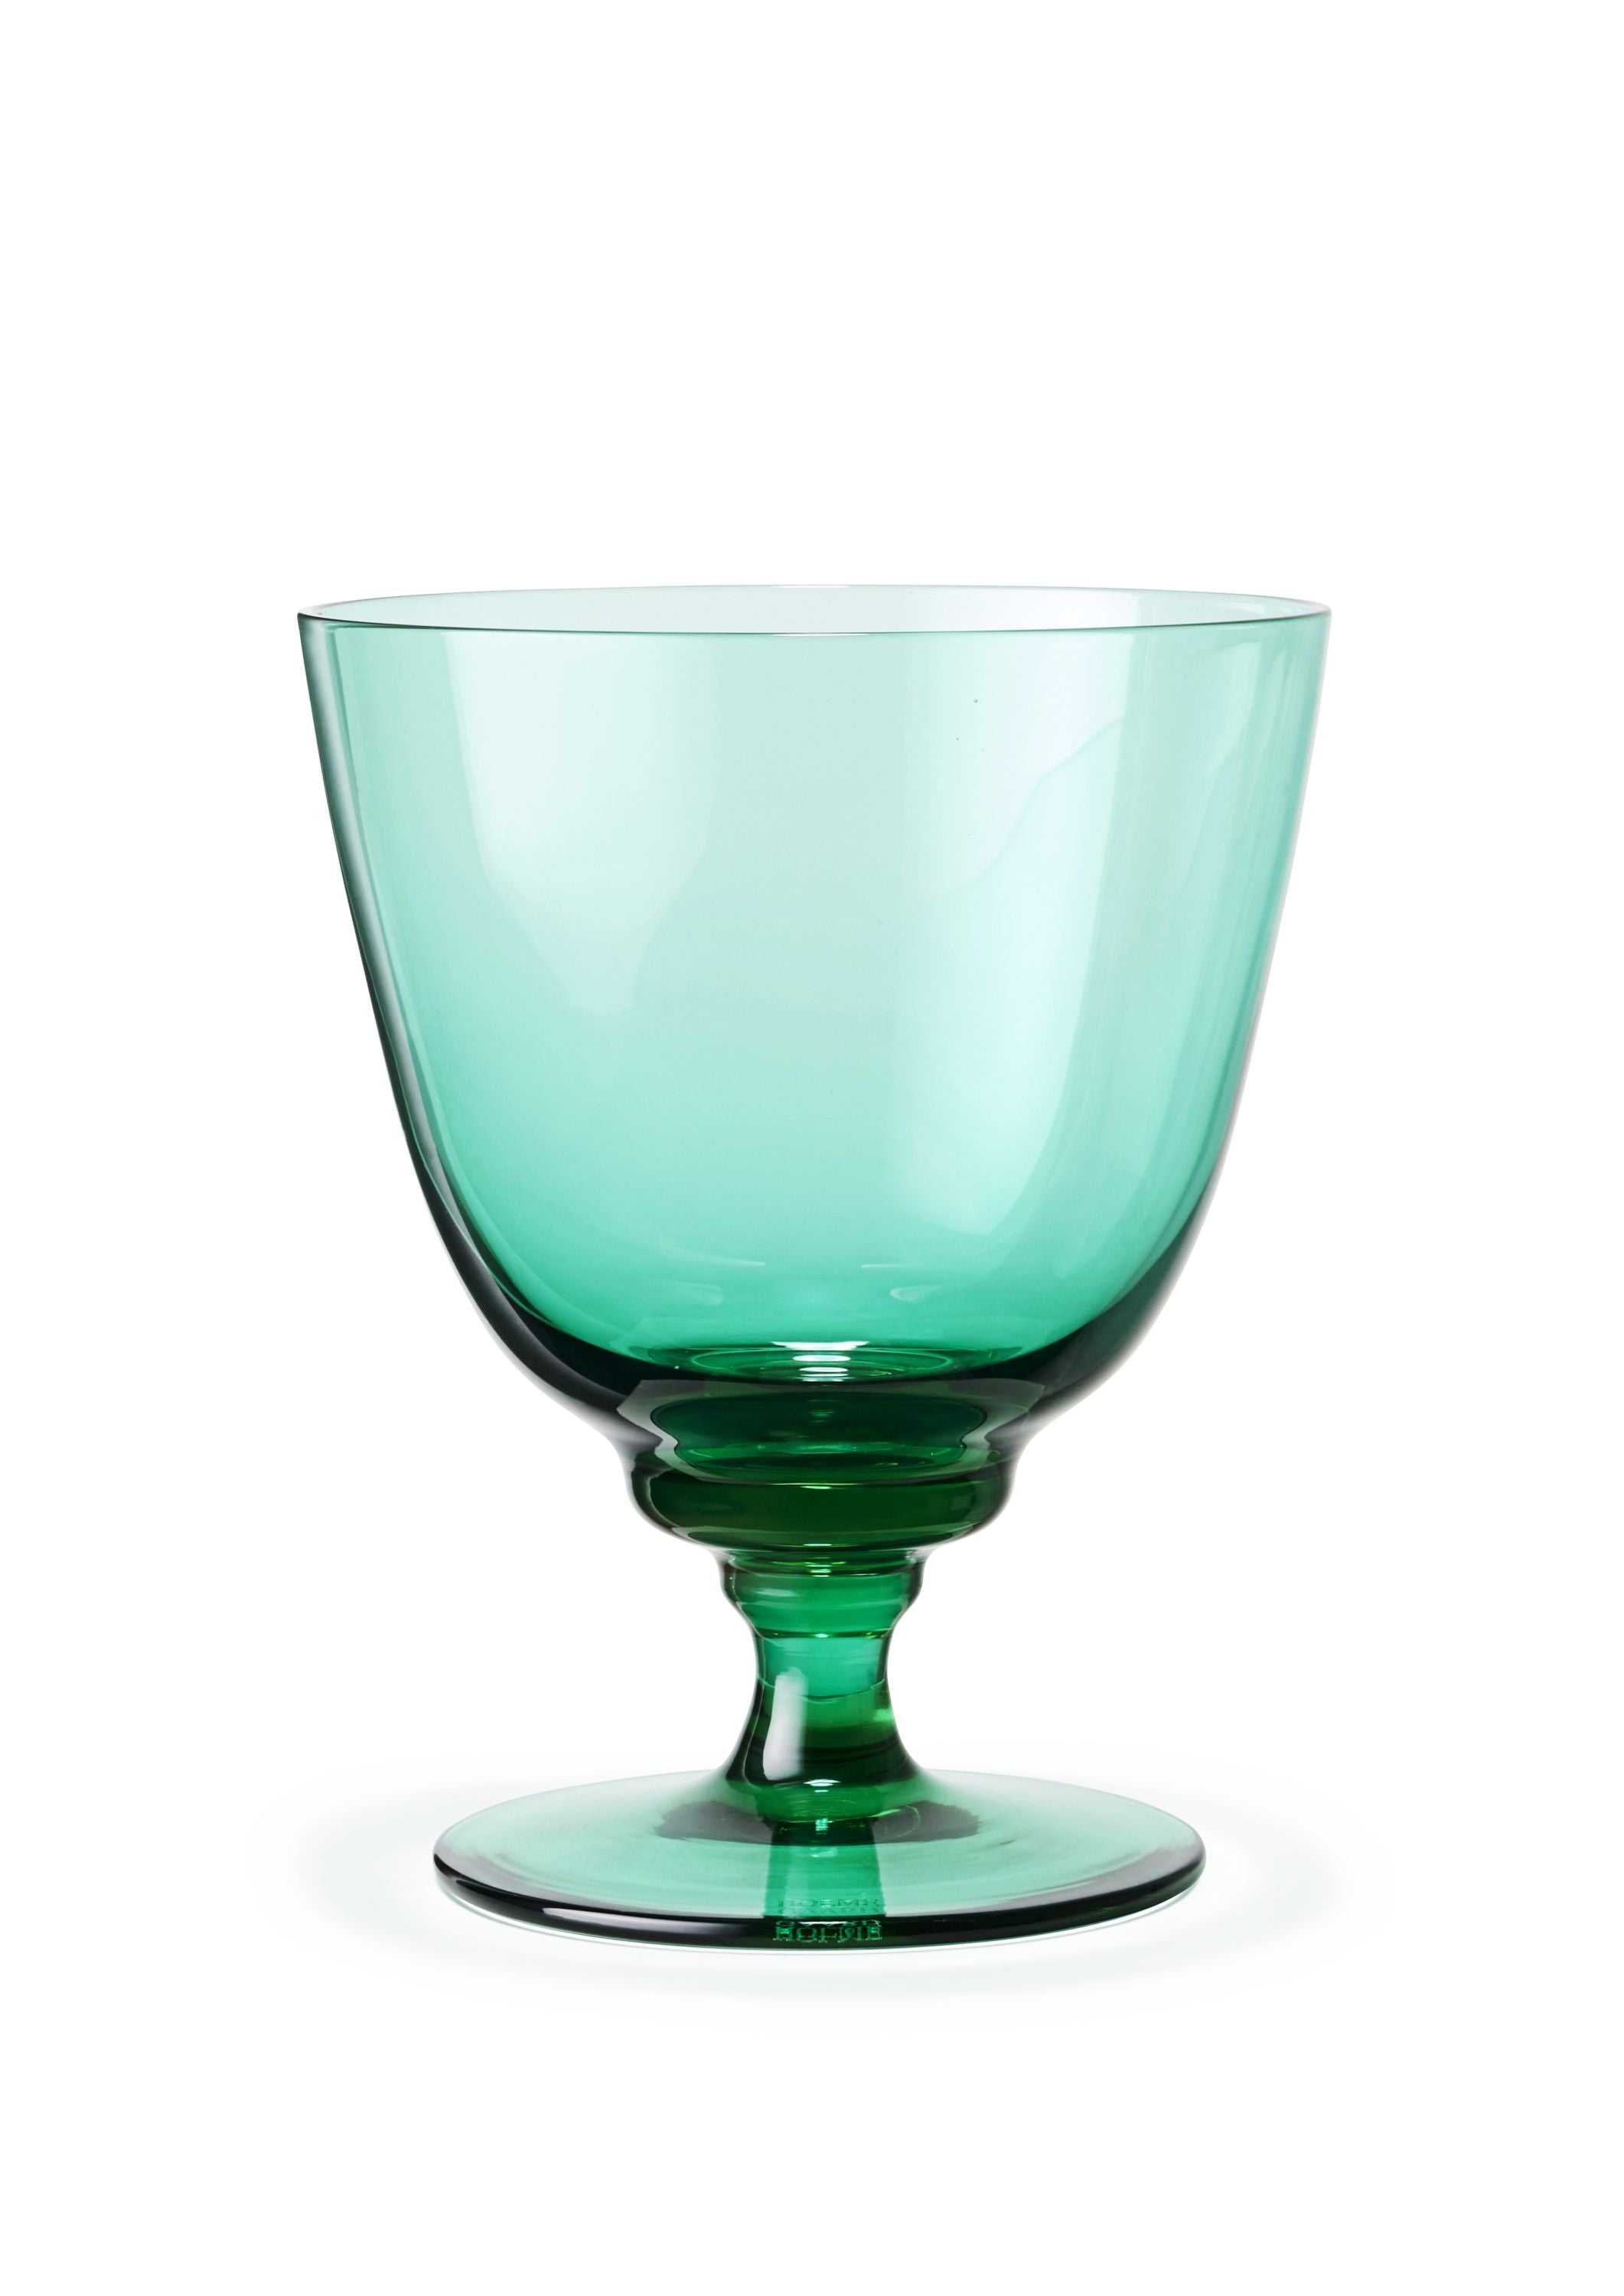 Holmegaard Flow Glass en el pie 35 CL, esmeralda verde